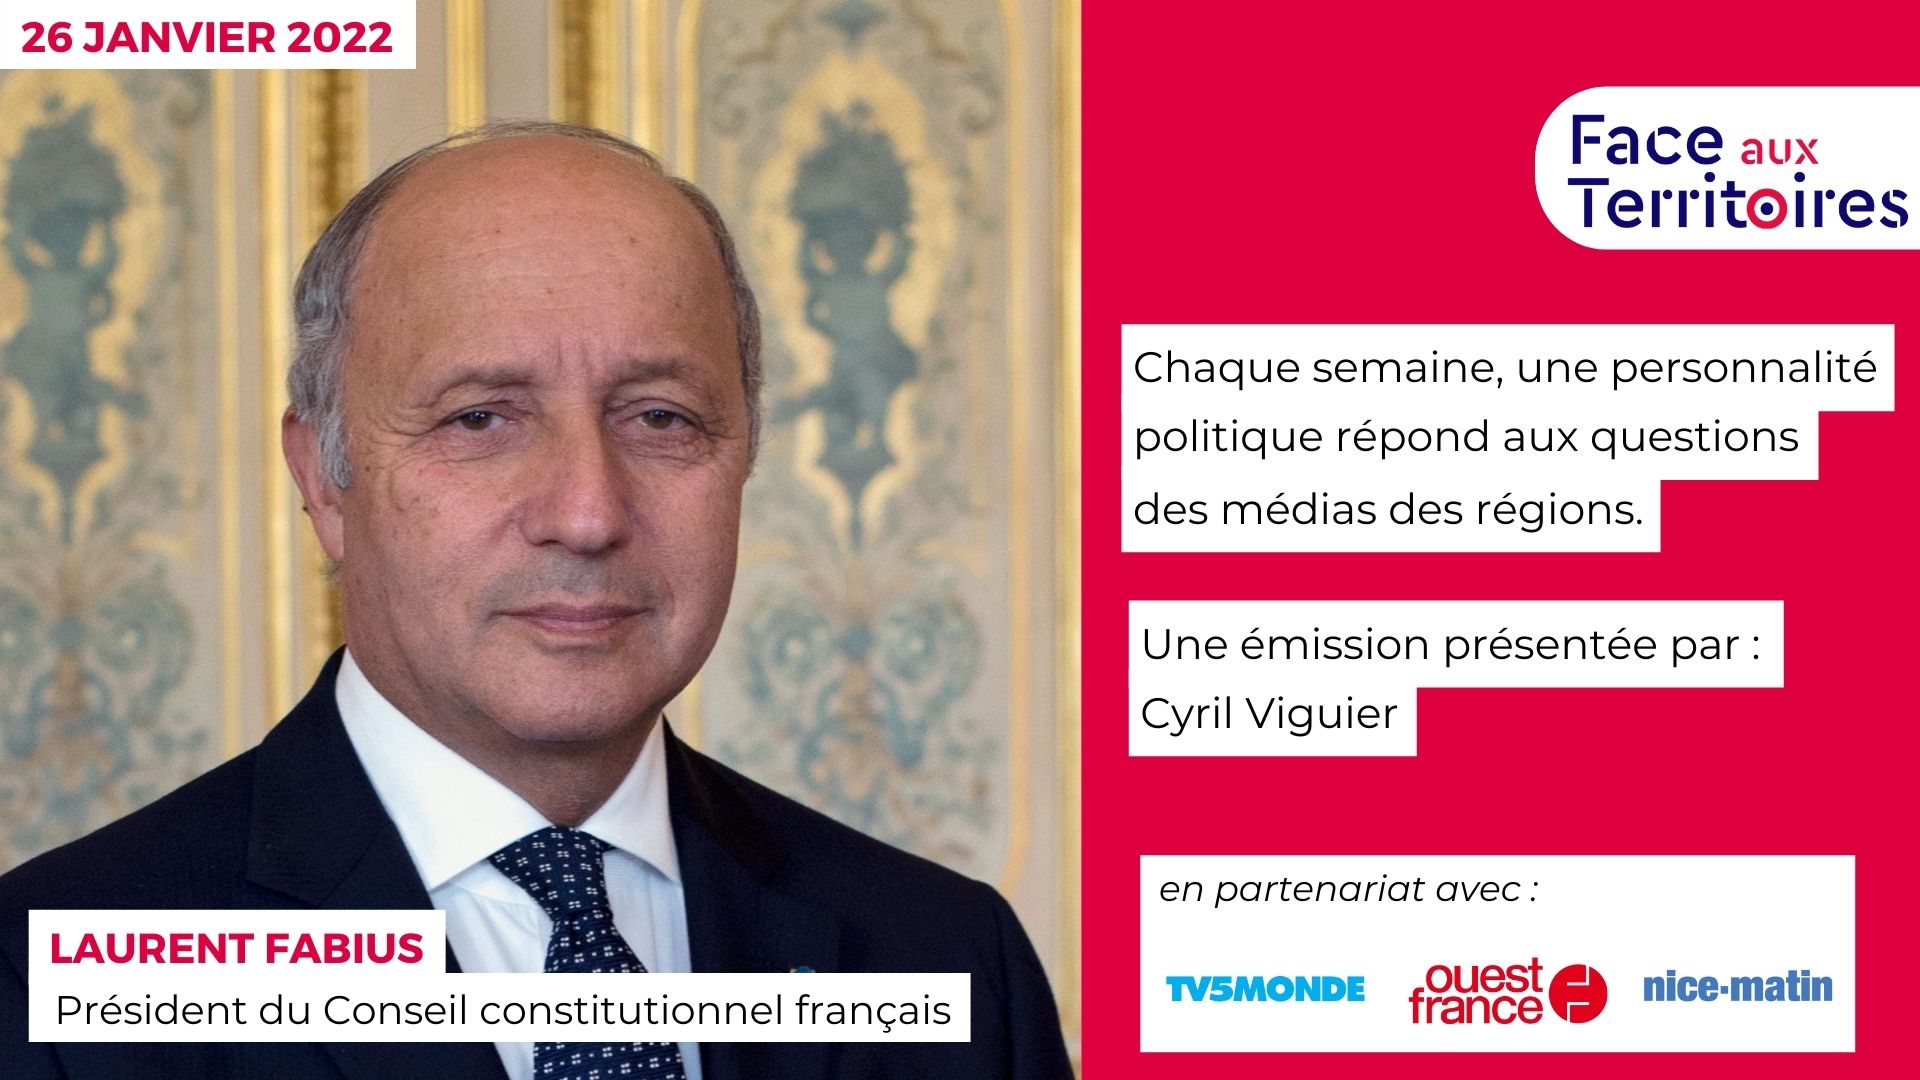 Laurent Fabius, Président du Conseil constitutionnel français, face aux territoires